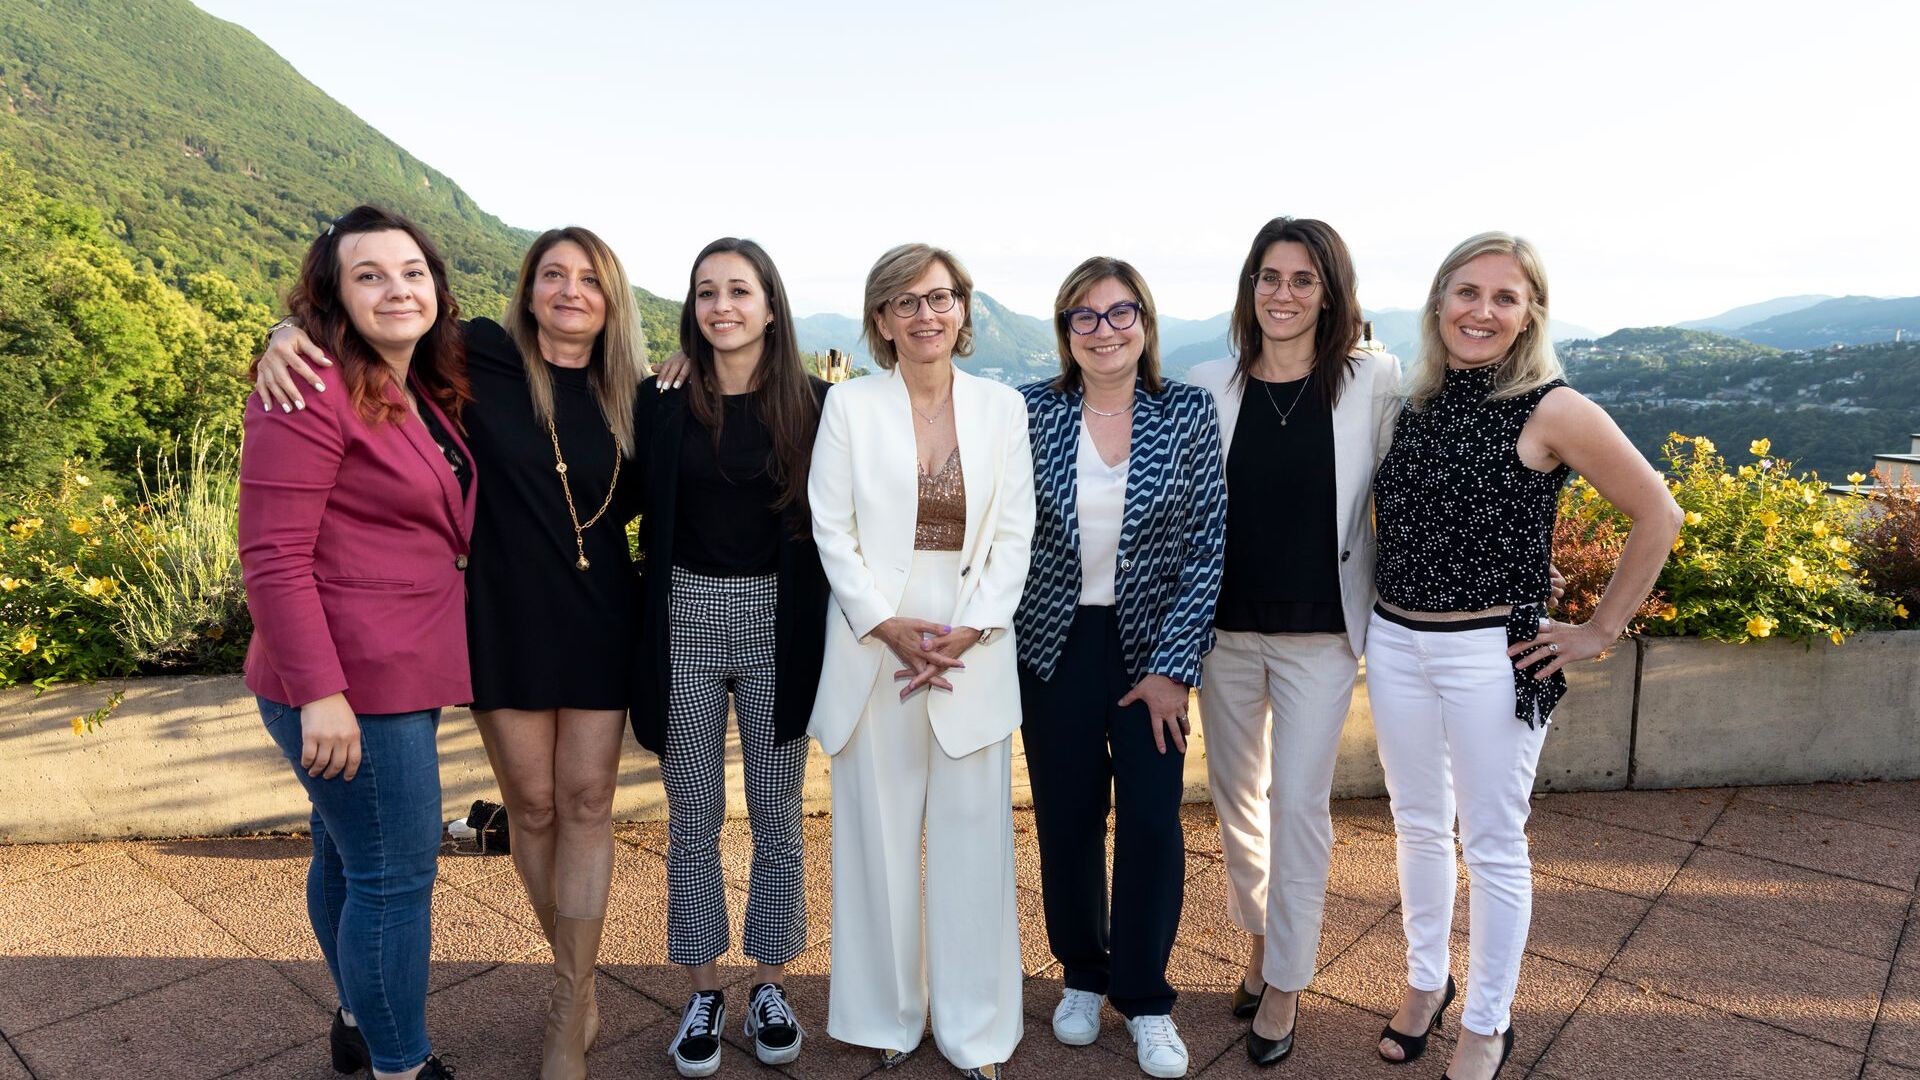 Uuden puheenjohtajan Cristina Giotto johtaman ated-ICT Ticino -yhdistyksen lähes kokonaan naispuolinen henkilökunta